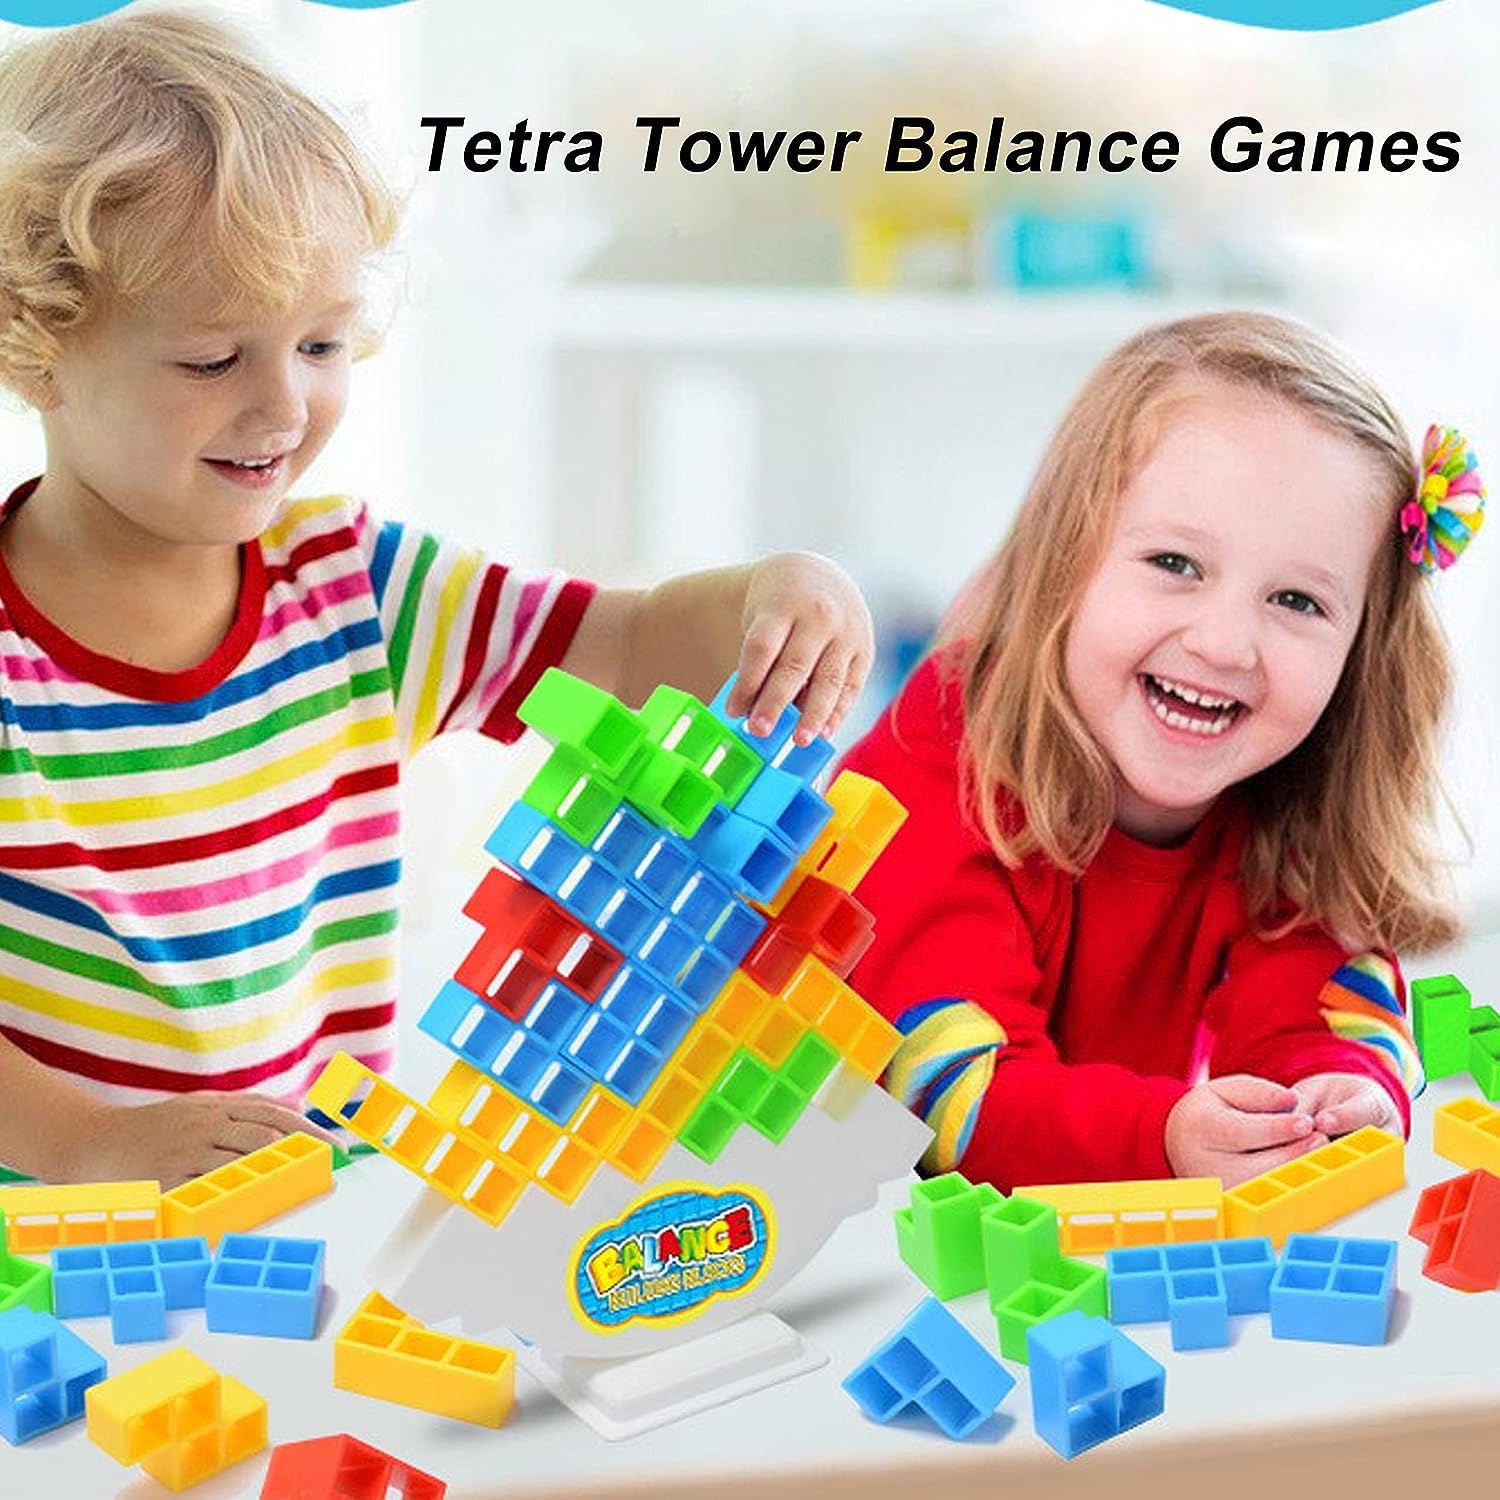 Tetra Tower Challenge - Durf jij het aan? Tetra tower balans bord